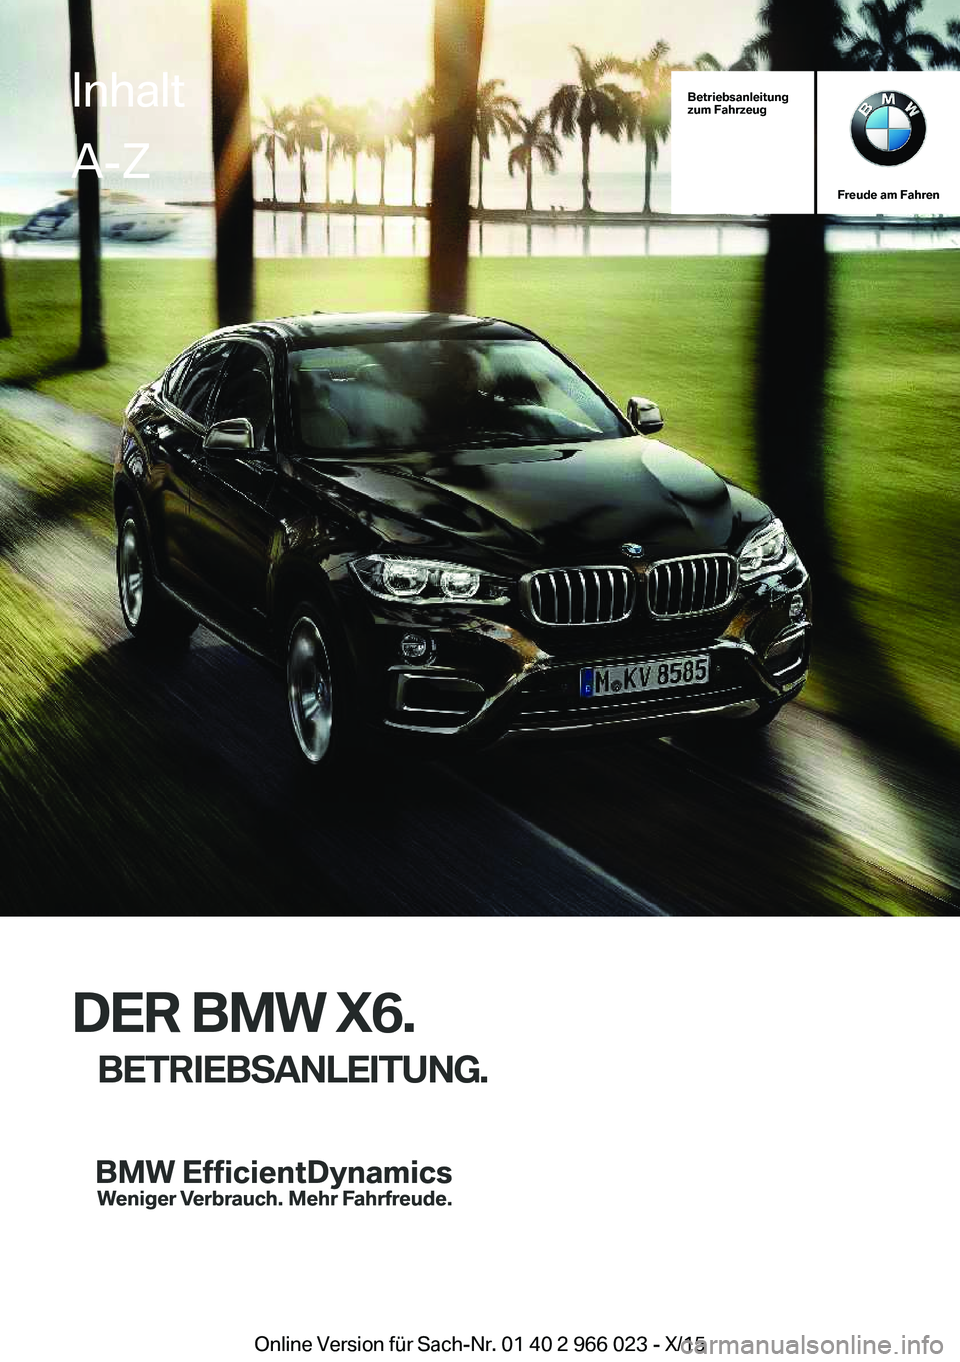 BMW X6 2016  Betriebsanleitungen (in German) Betriebsanleitung
zum Fahrzeug
Freude am Fahren
DER BMW X6.
BETRIEBSANLEITUNG.
InhaltA-Z
Online Version für Sach-Nr. 01 40 2 966 023 - X/15   